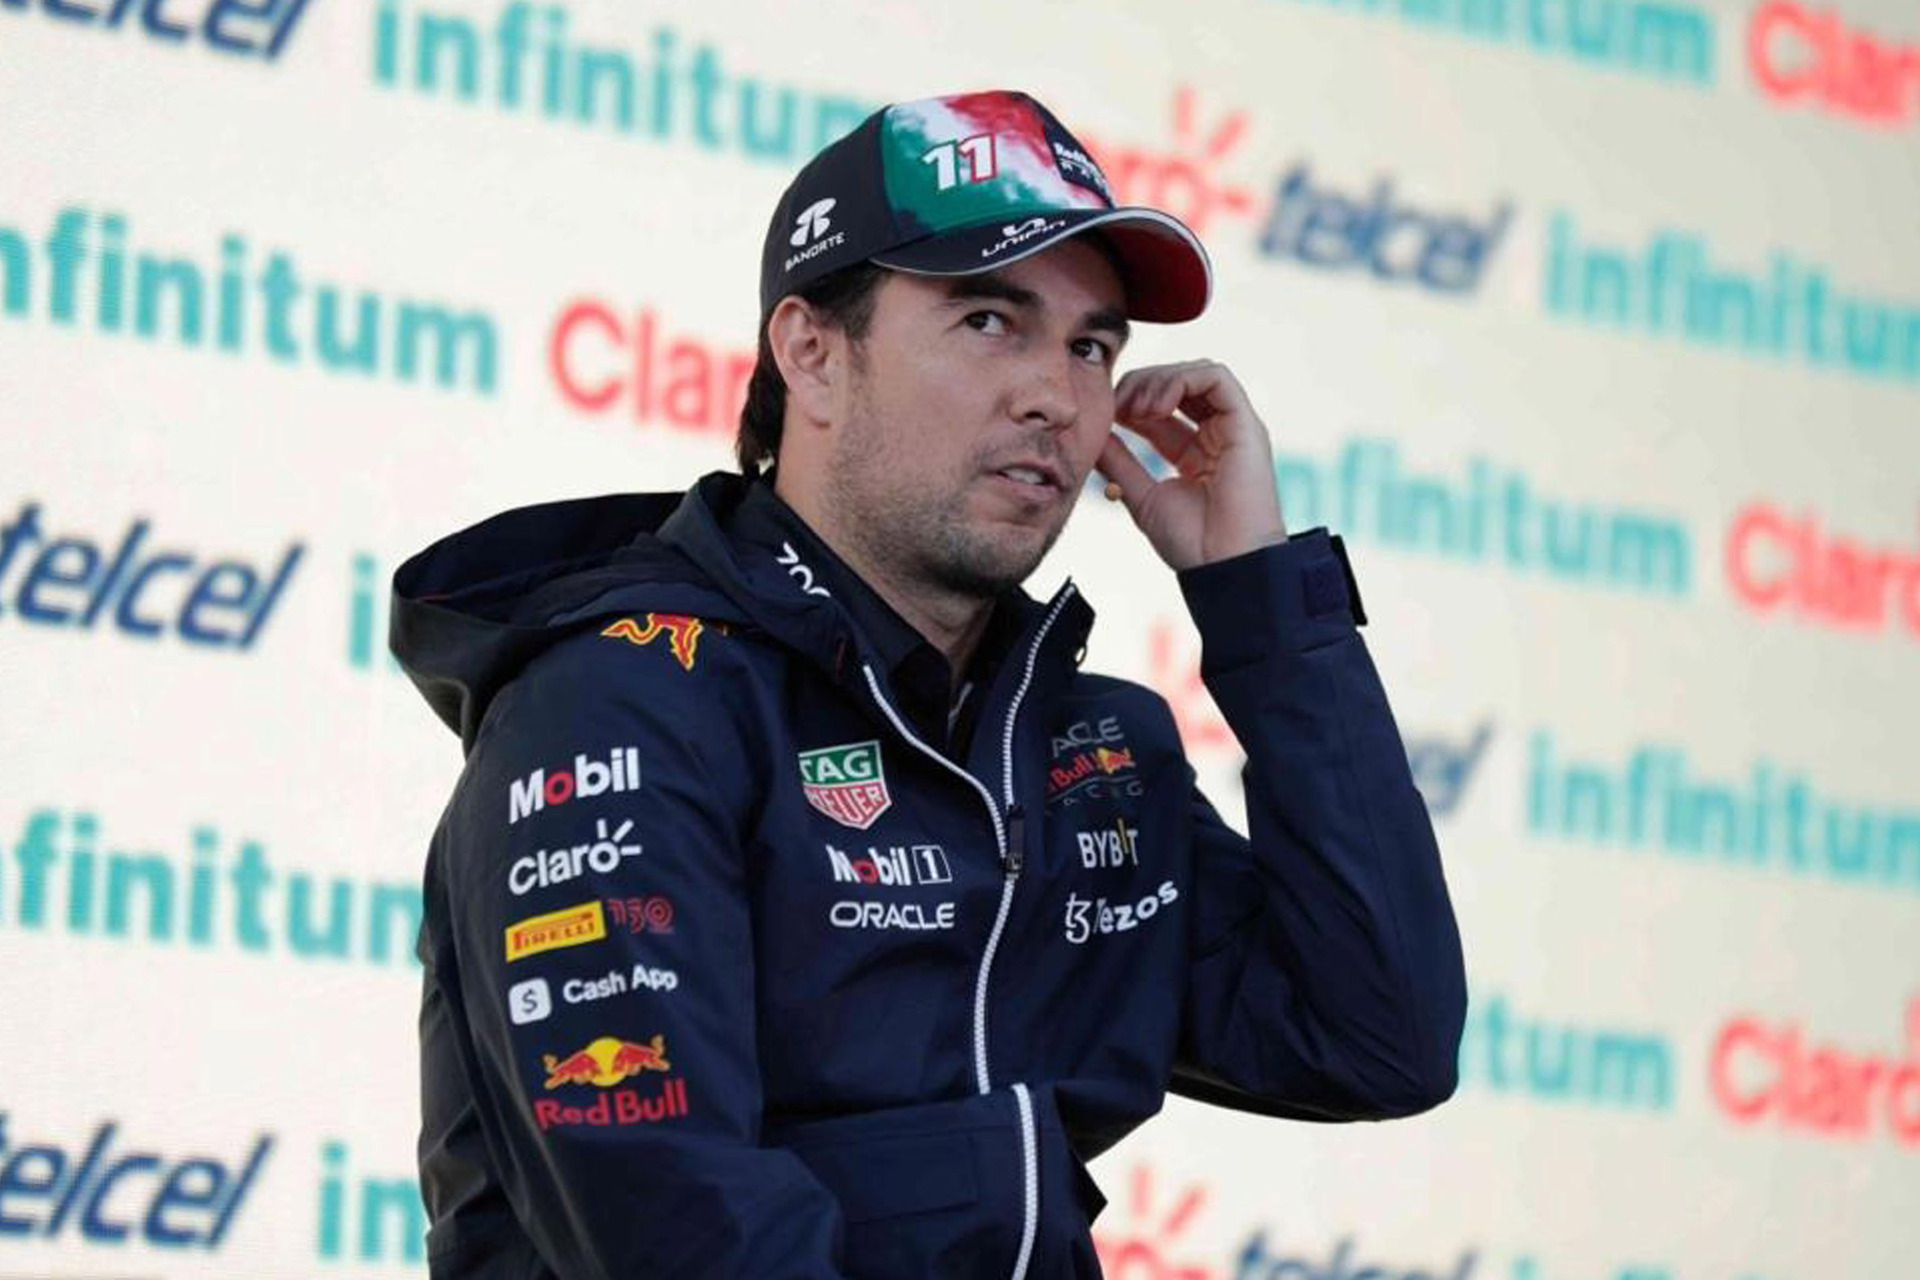 Martin Brundle dice que \'Checo\' Pérez fue utilizado como \'conejillo de indias\' en el GP de Mónaco. Noticias en tiempo real